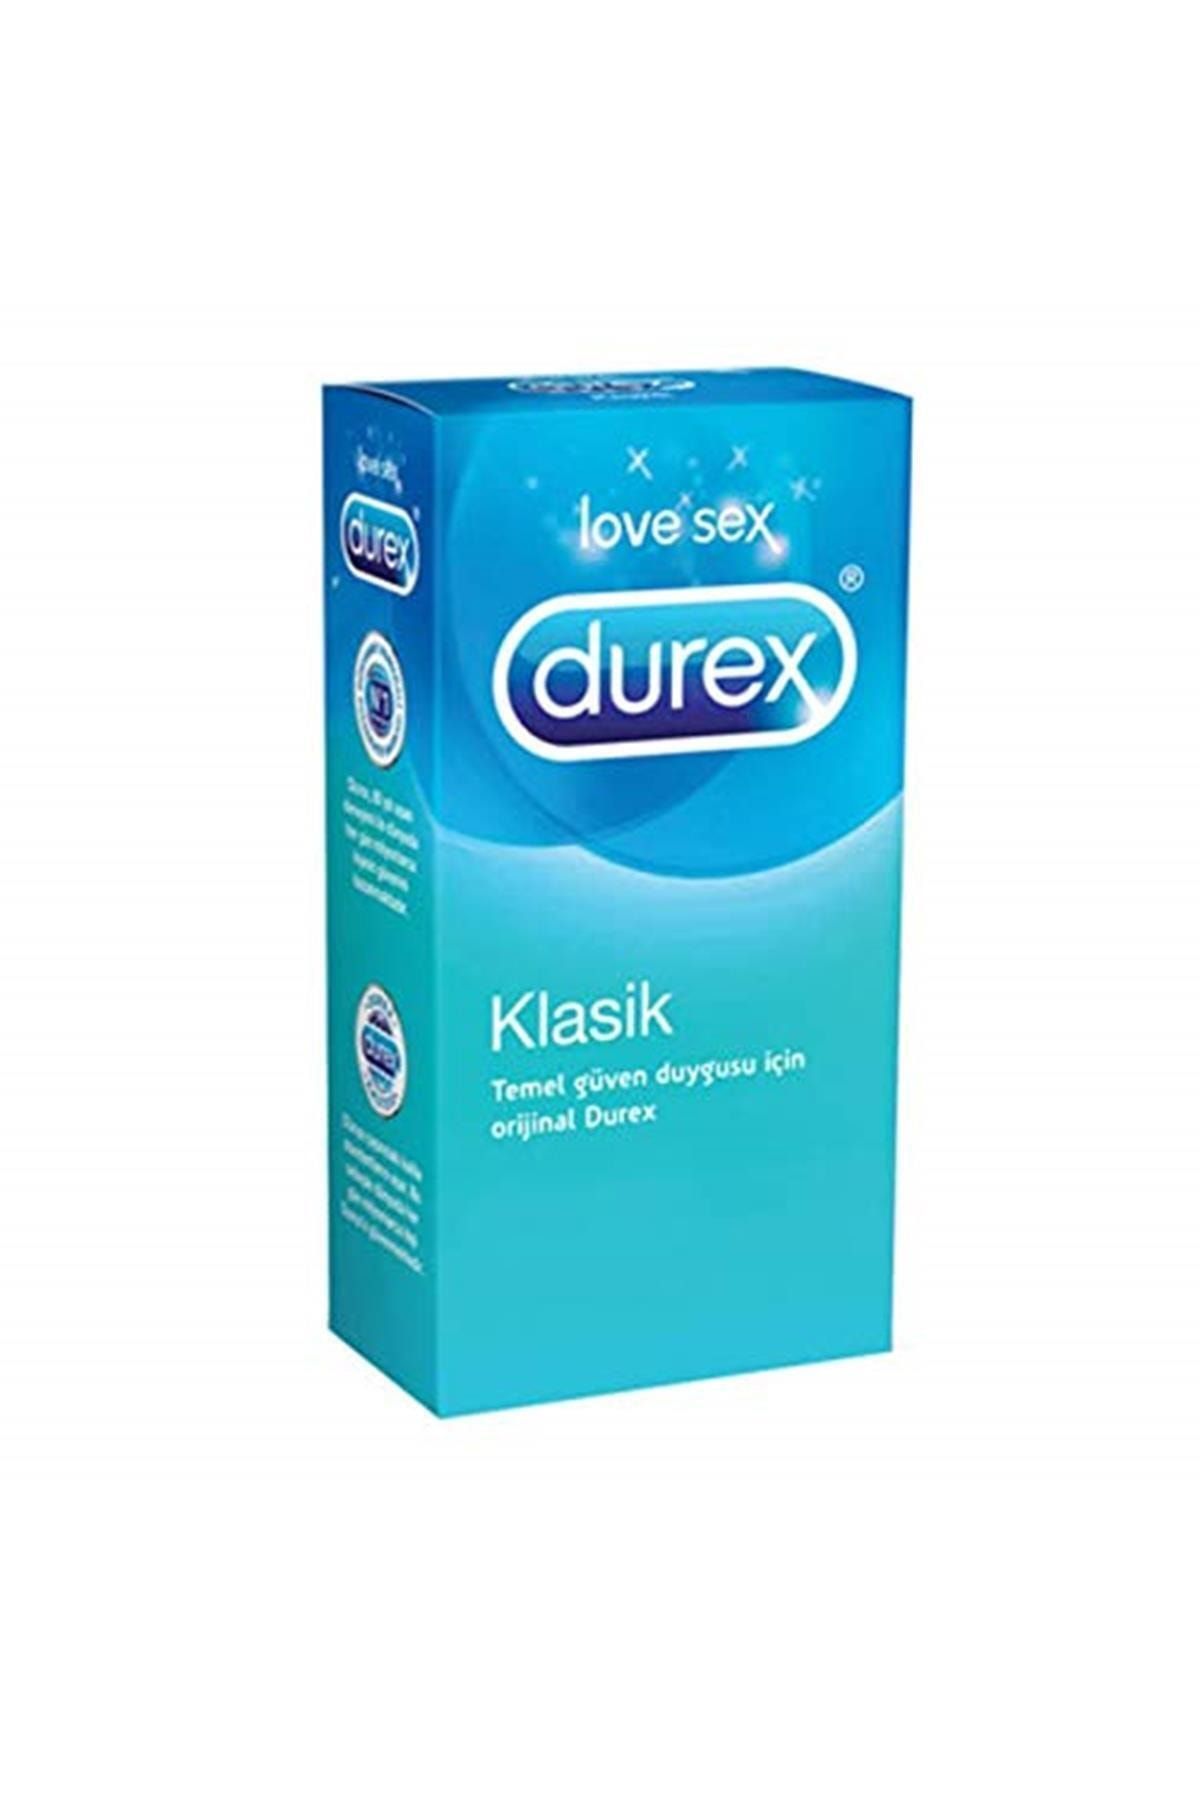 Durex Klasik Prezervatif 12'li